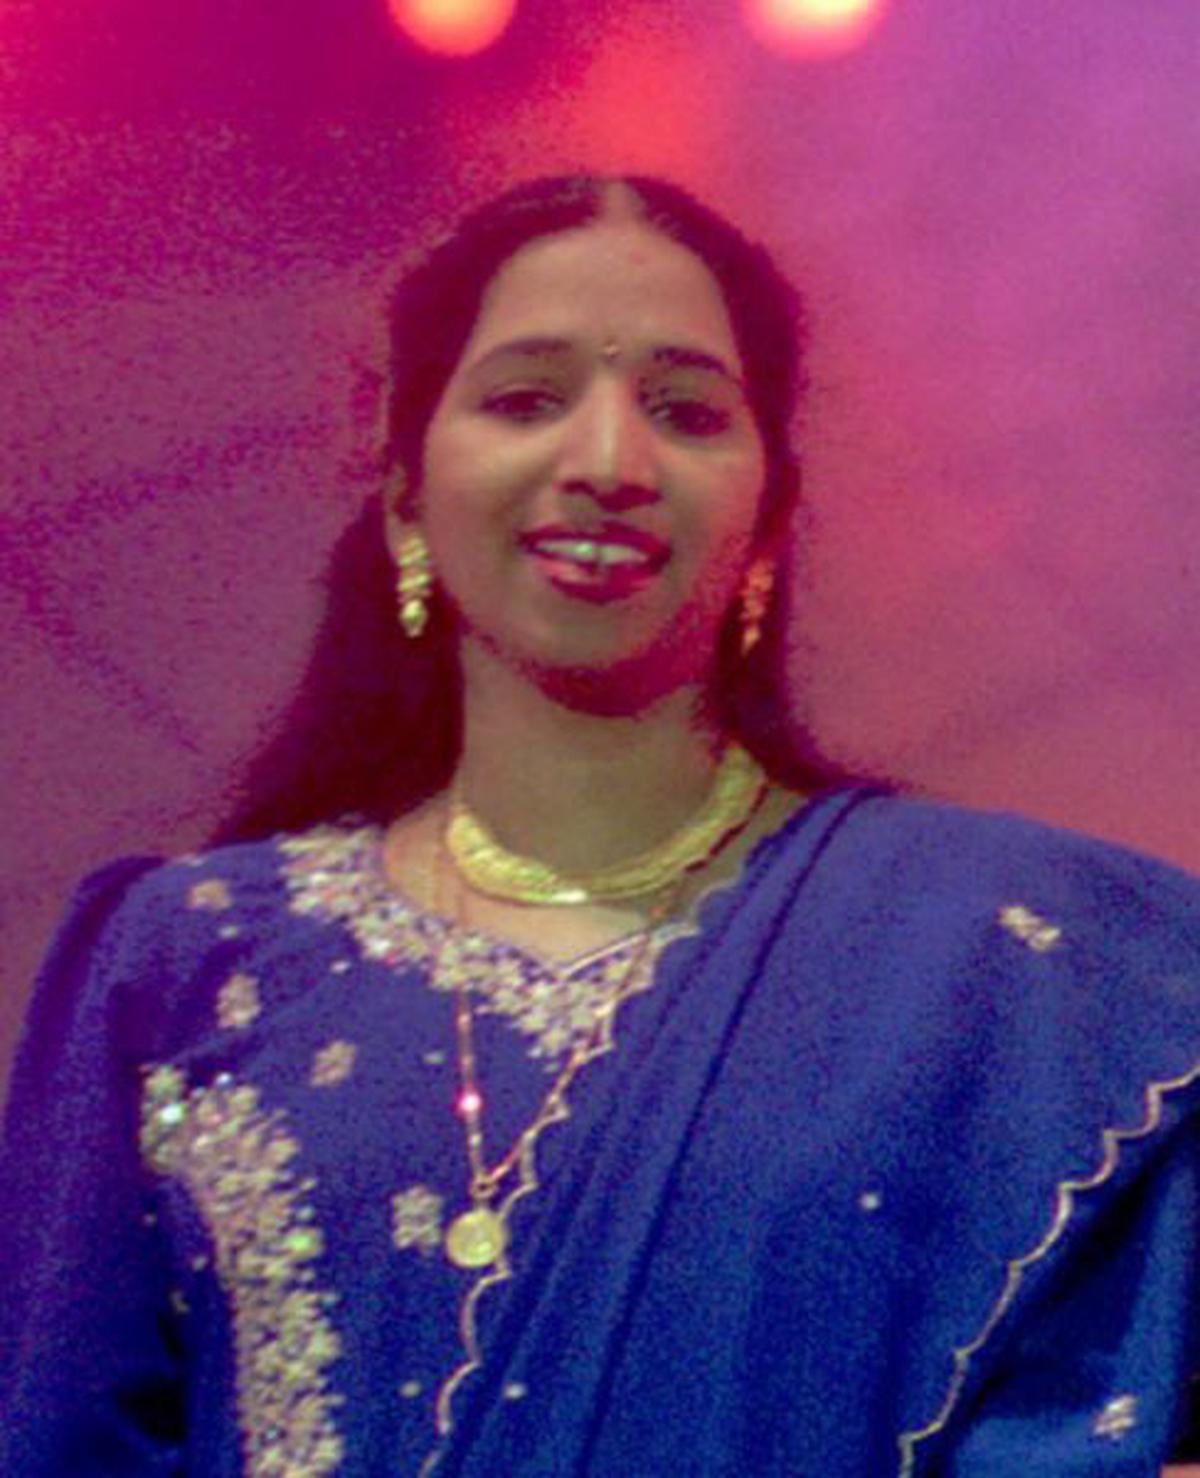 swarnalatha singer